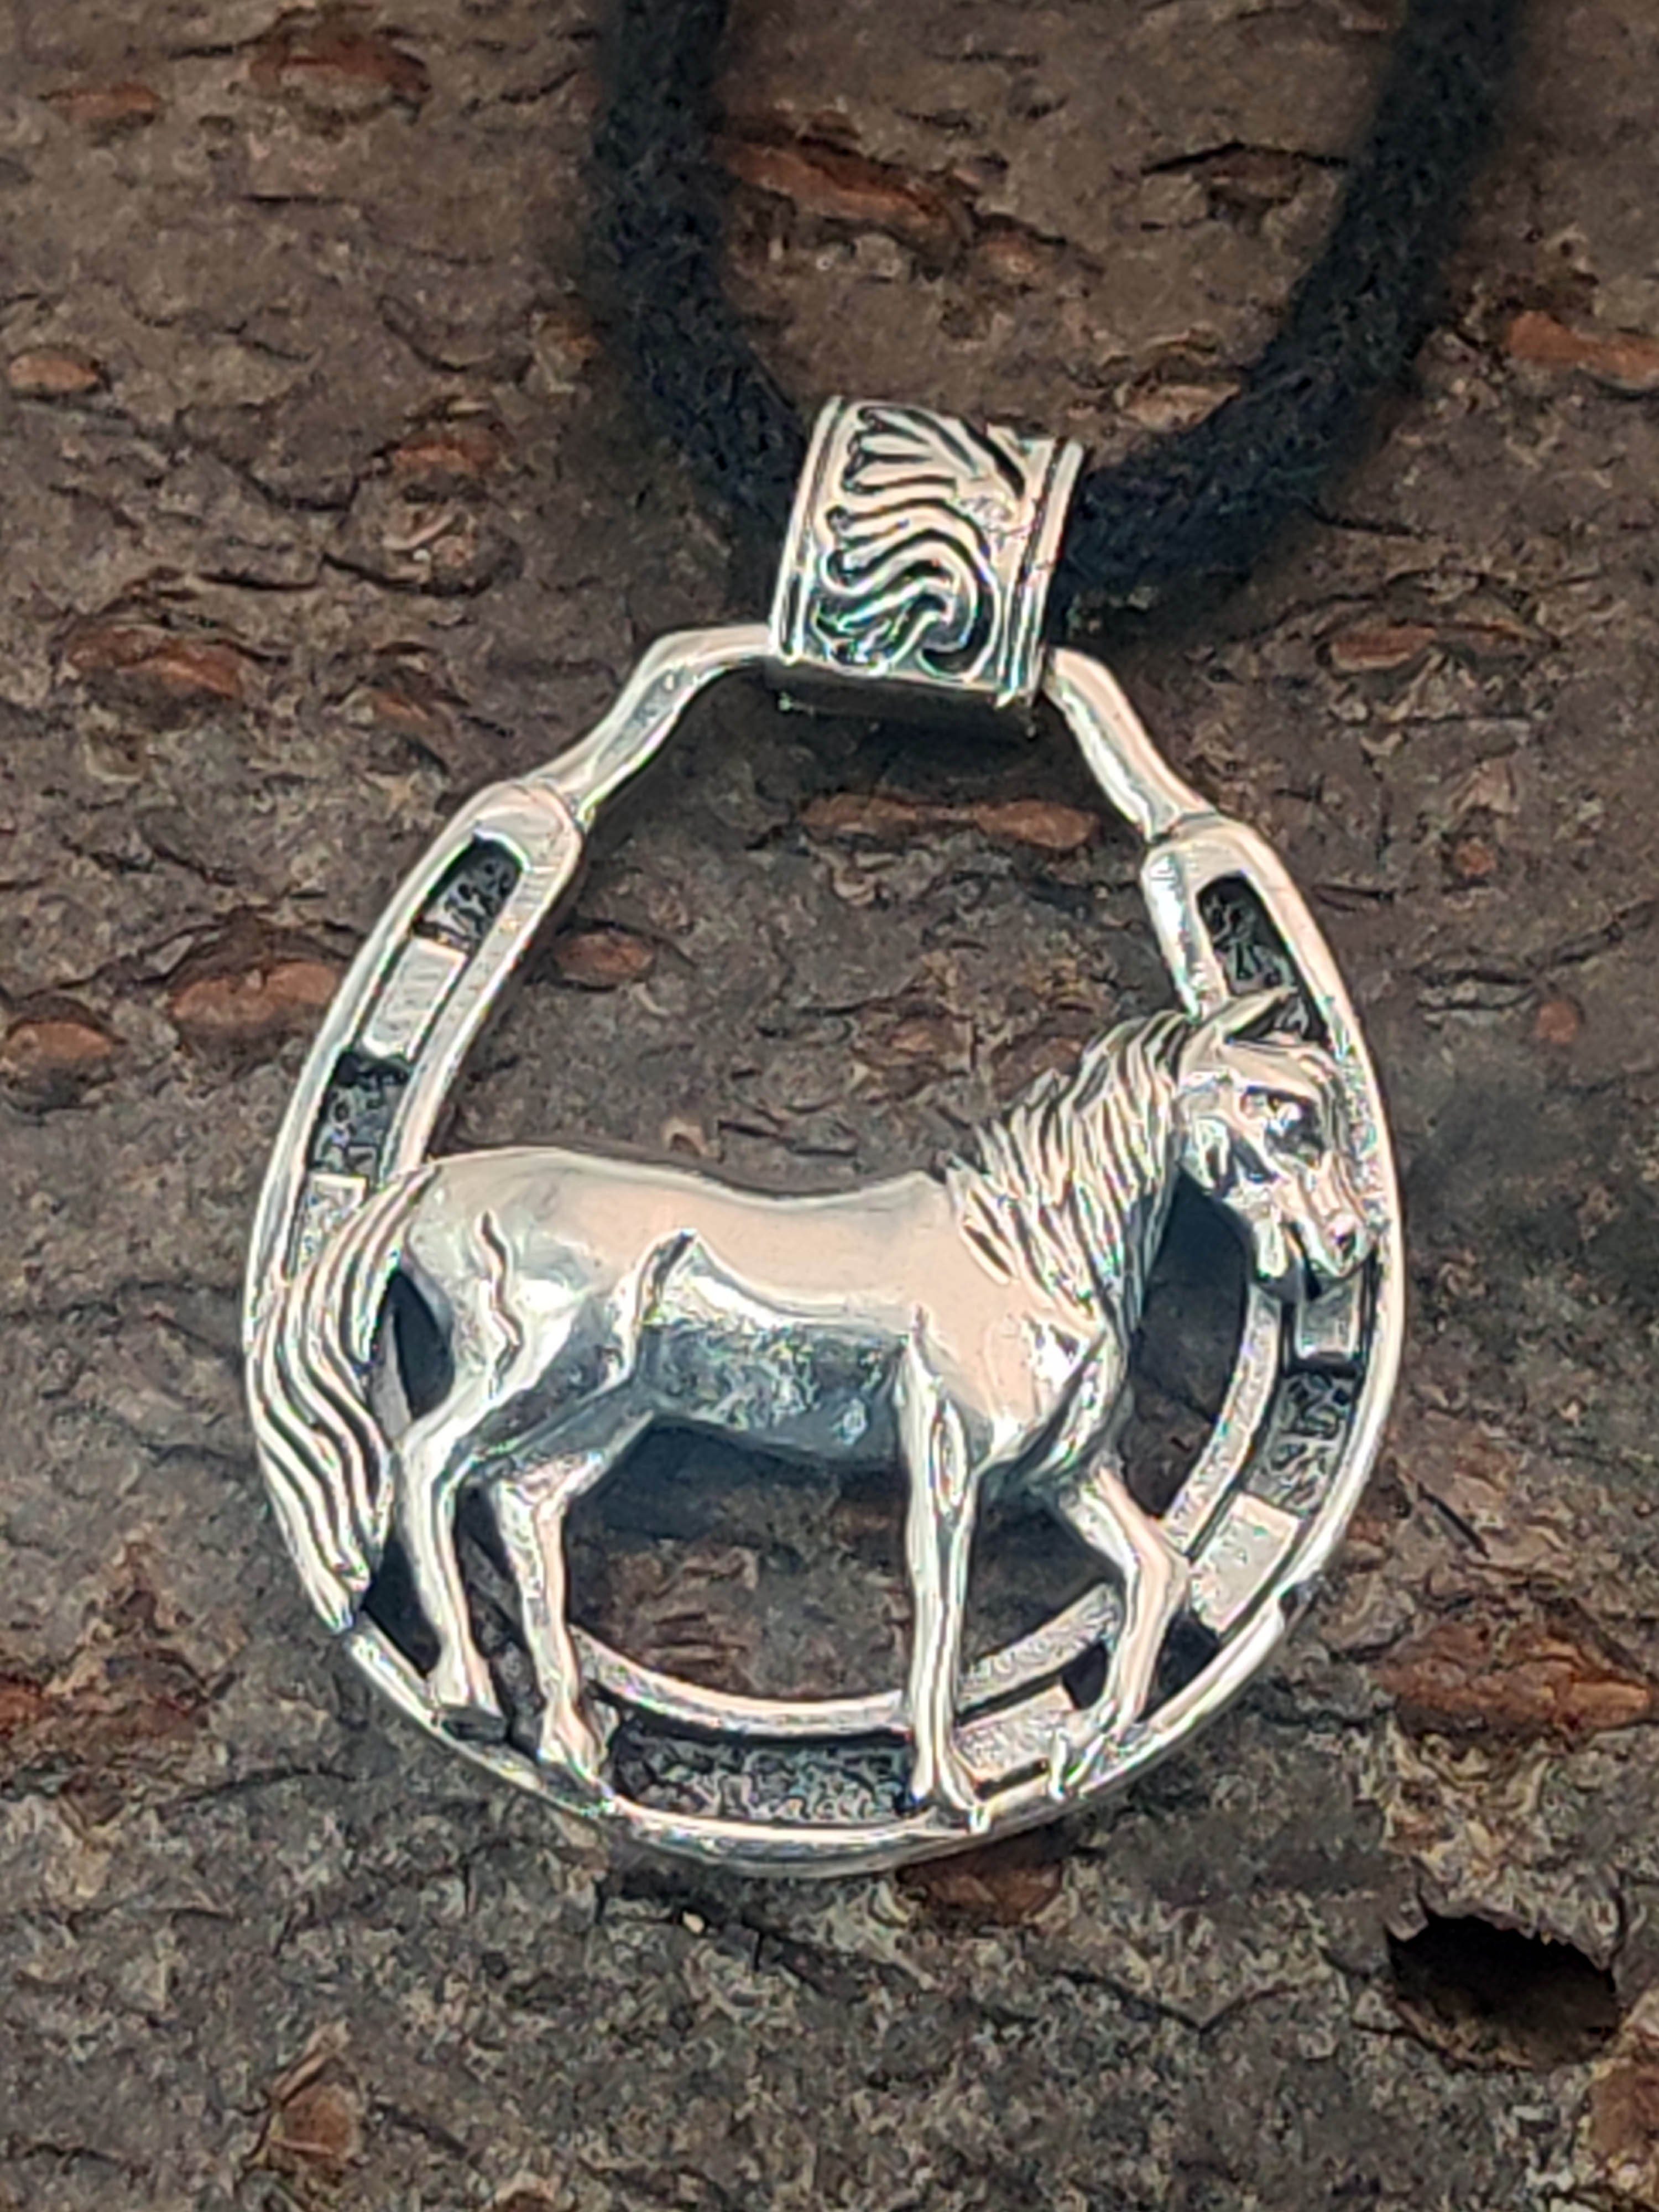 Kiss Pferd 925 Silber of 413 Pferdanhänger Nr. Pferdeanhänger Leather Horse Kettenanhänger Pferde